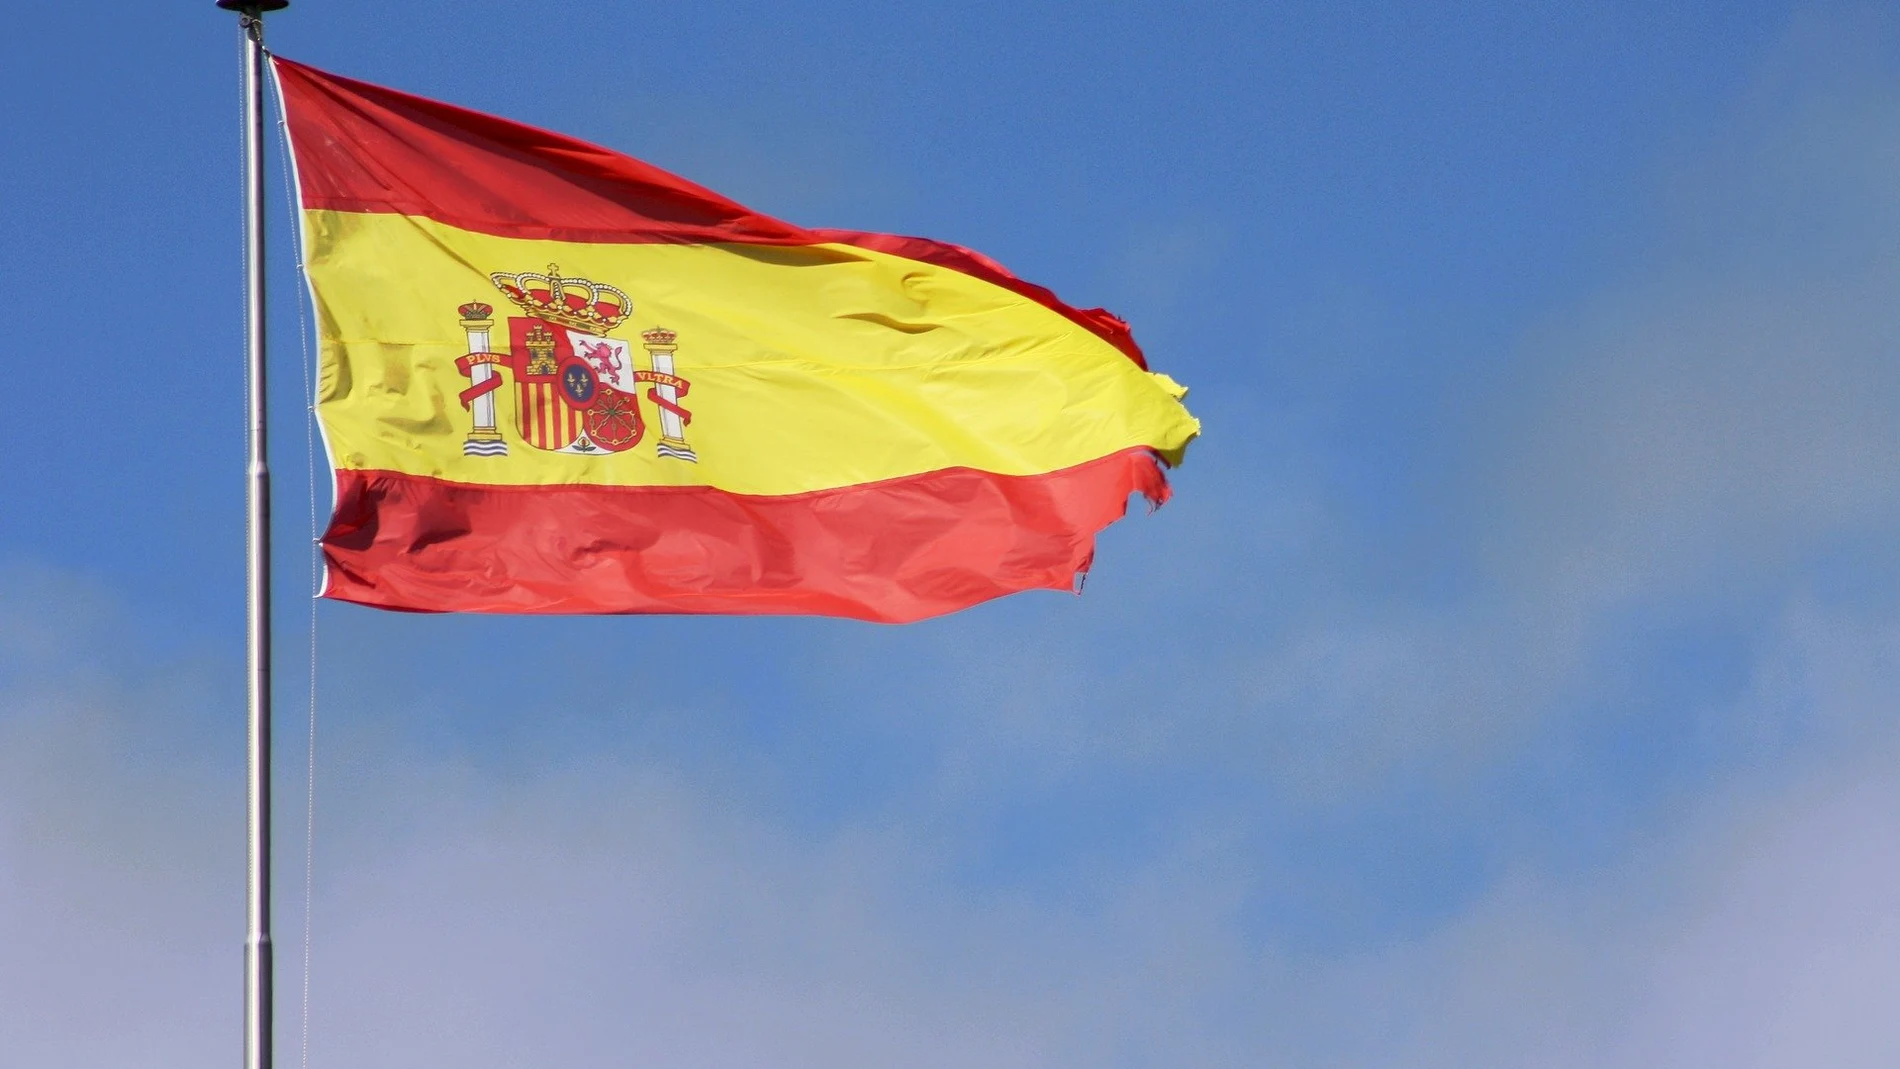 Bandera España - Don Gol